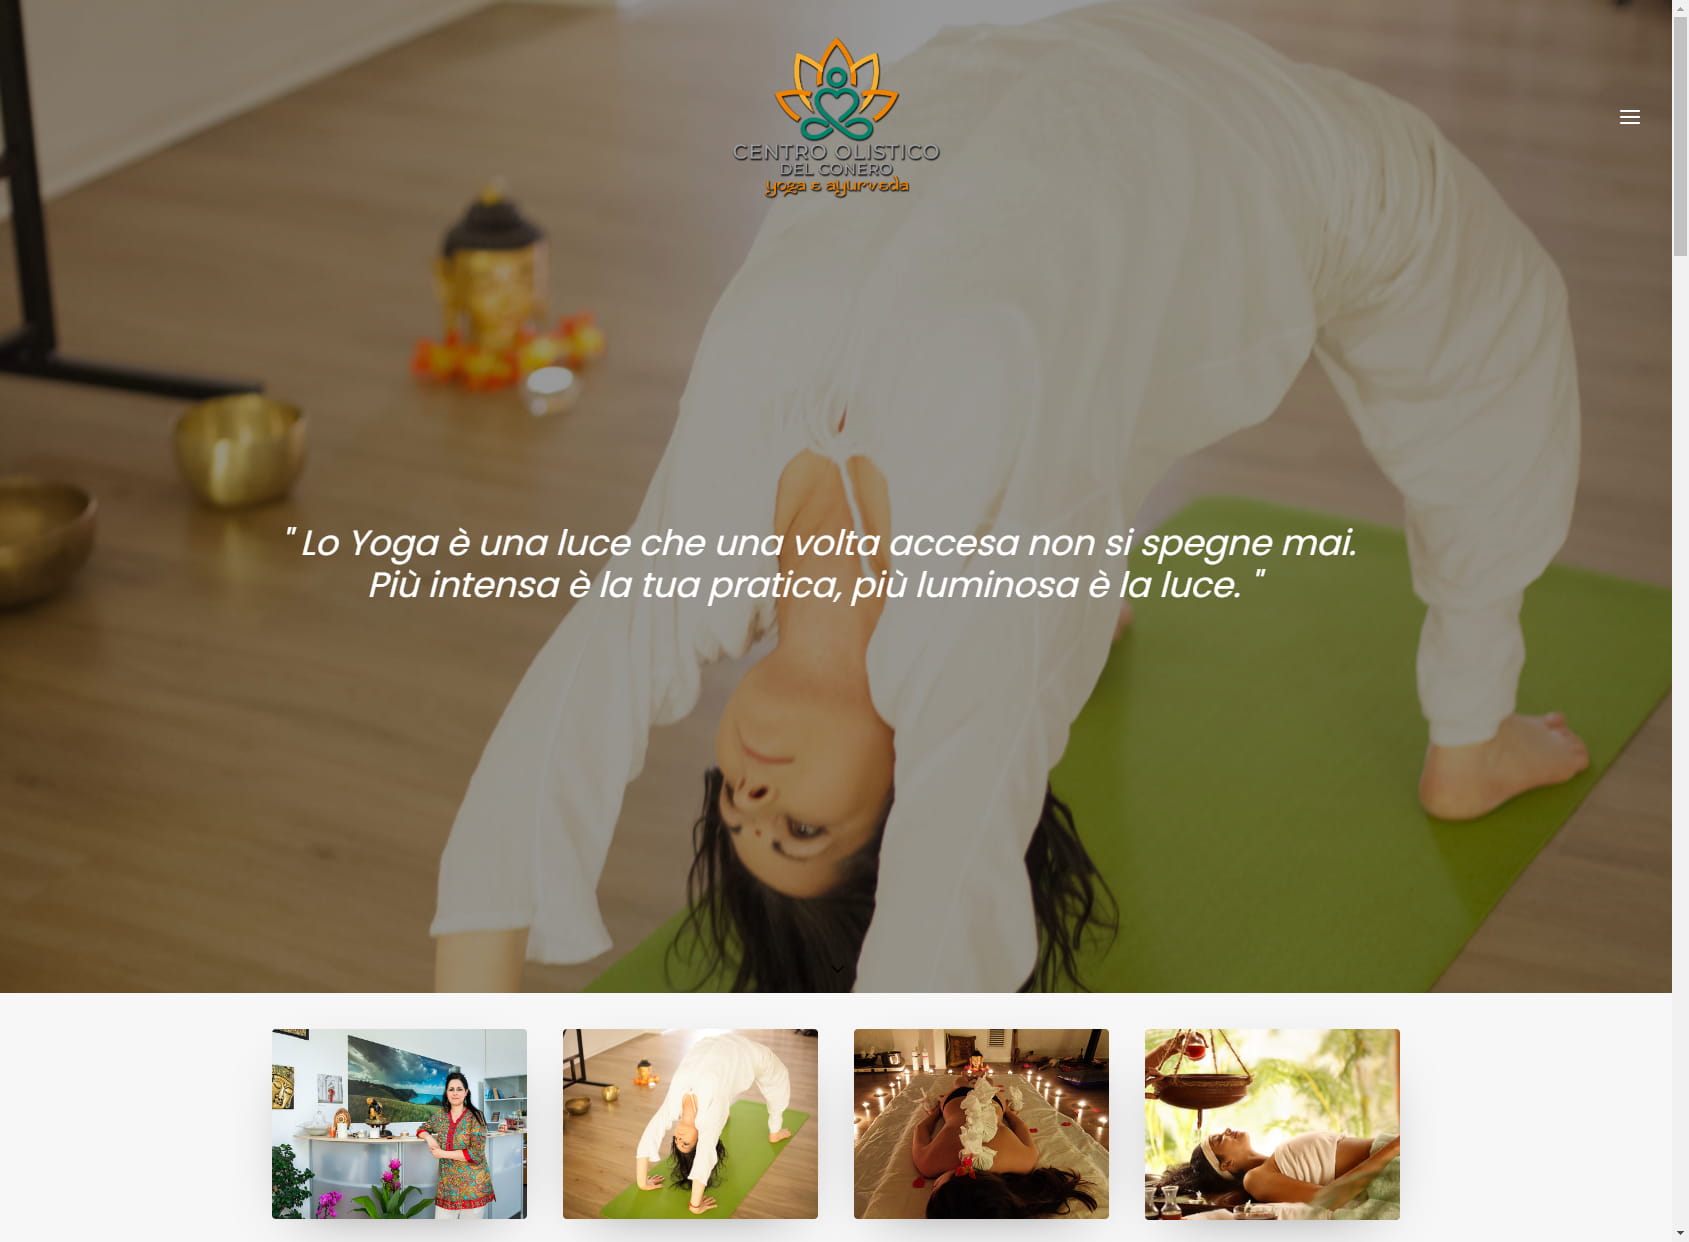 Centro di yoga e ayurveda: Centro olistico del Conero